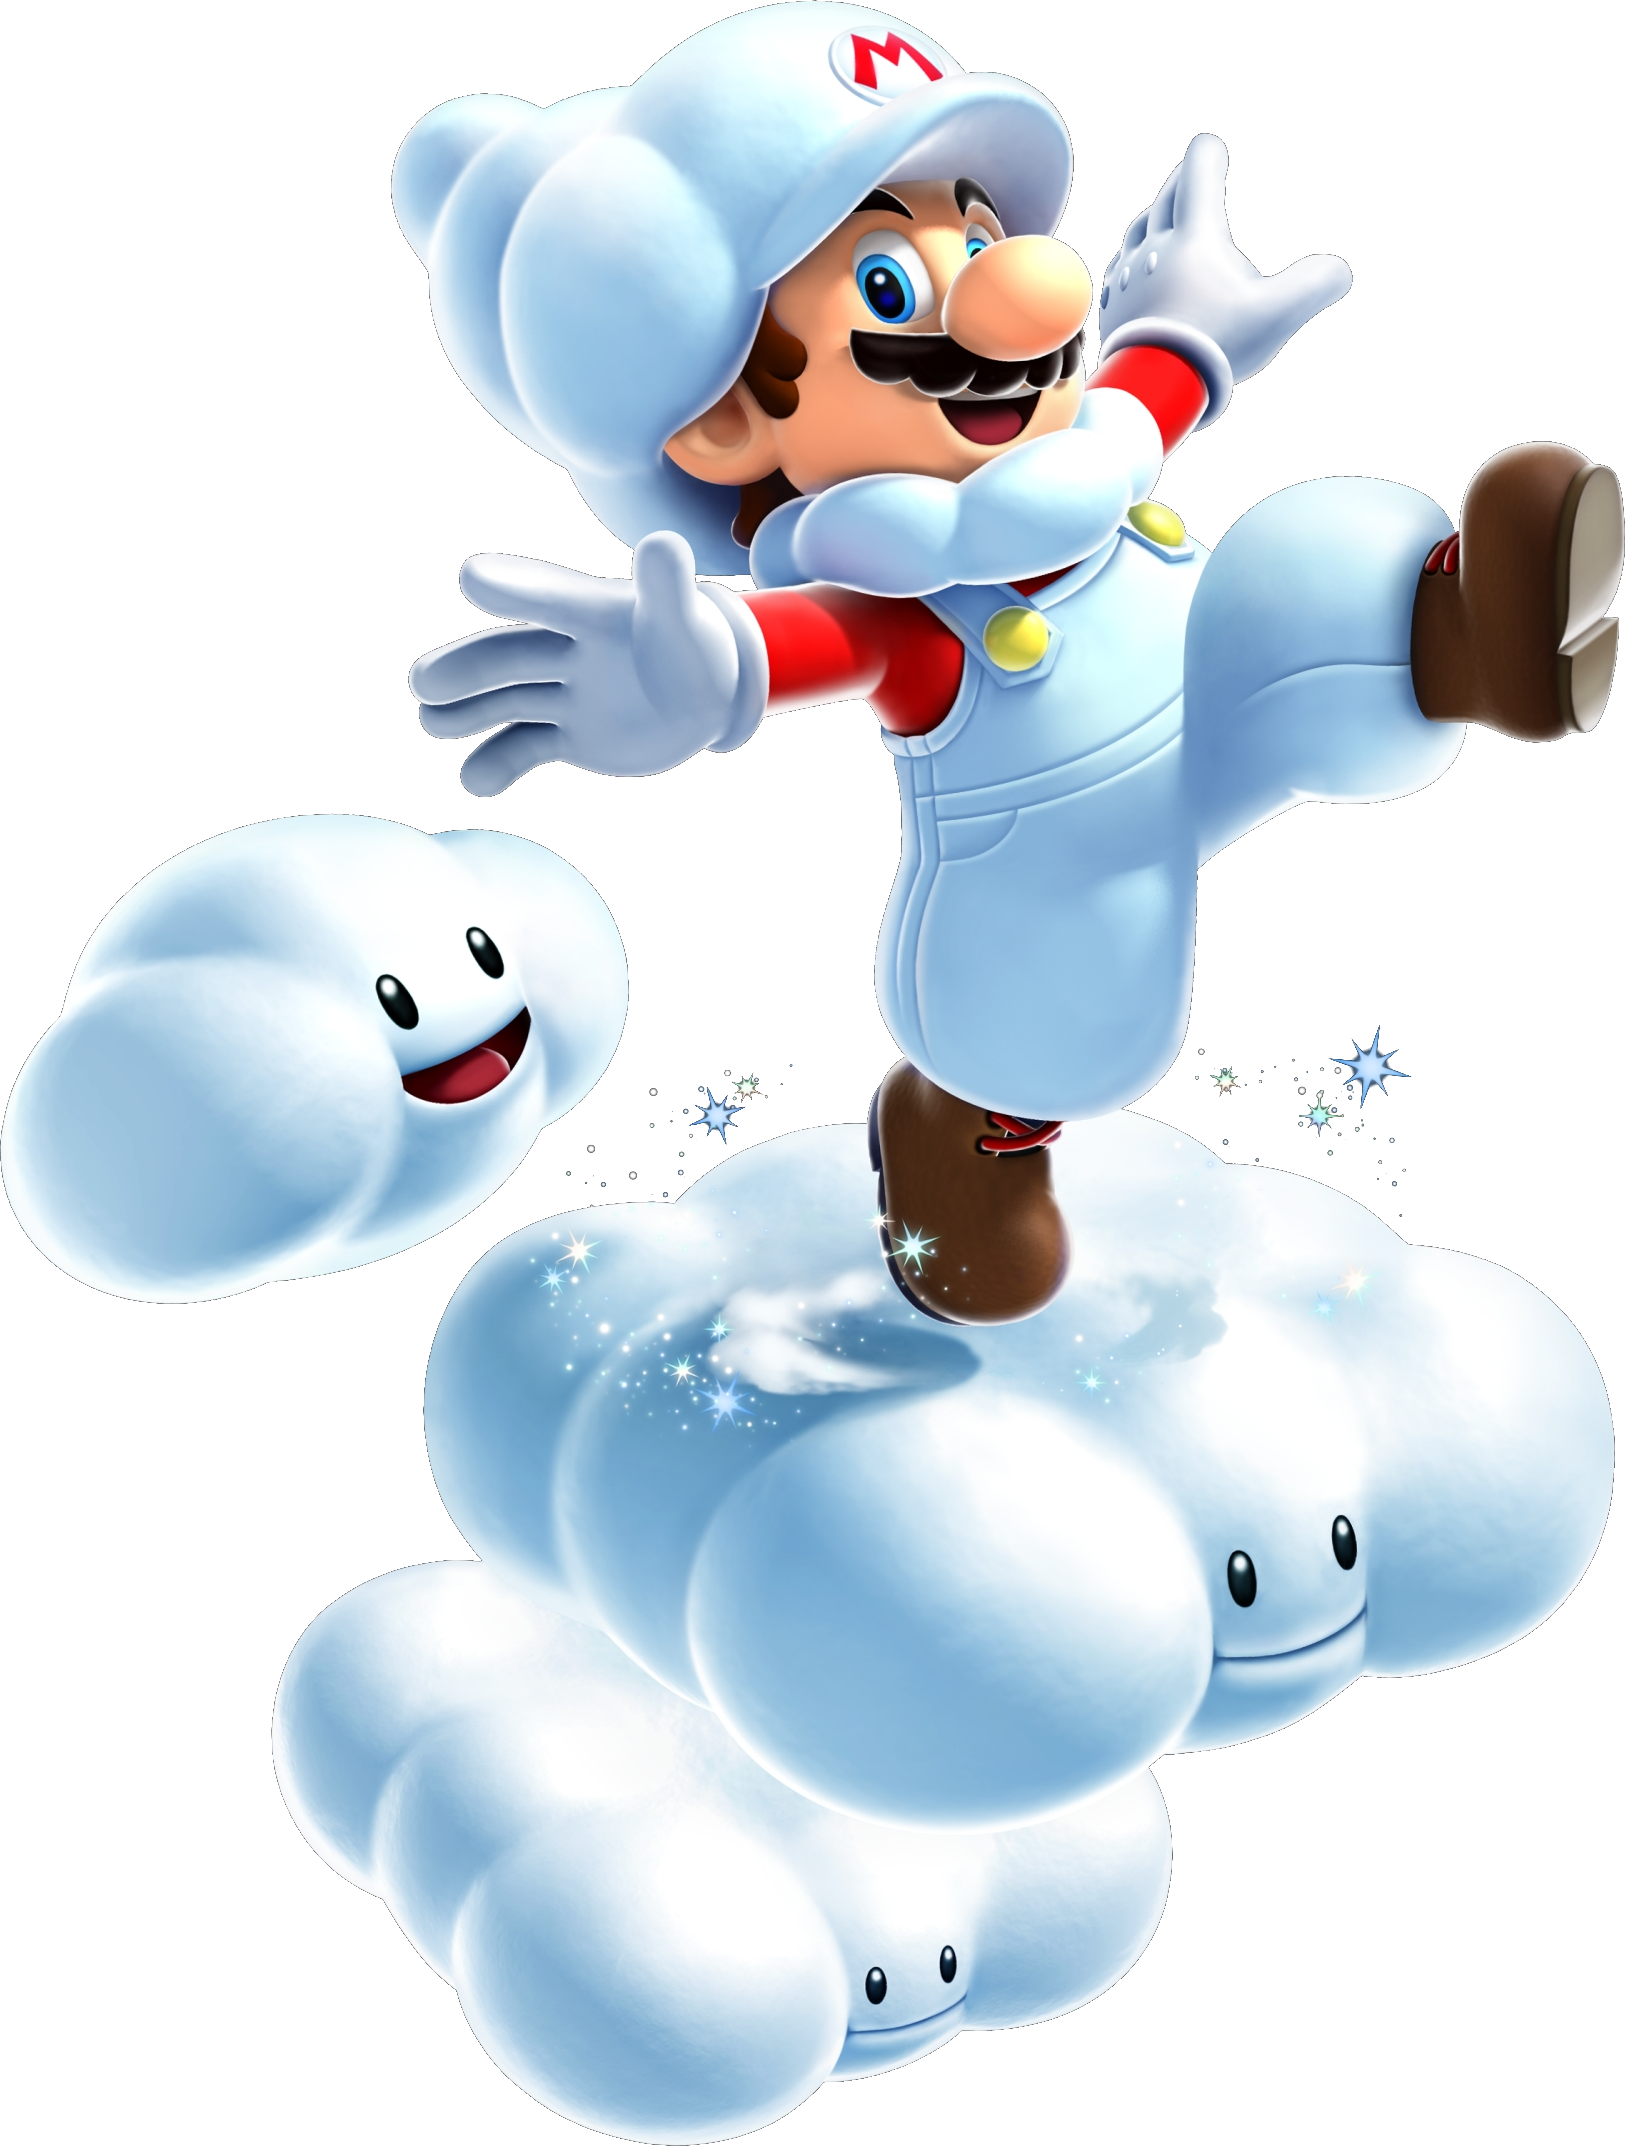 Cloud Mario - Super Mario Galaxy 2 Cloud Mario (1625x2146), Png Download